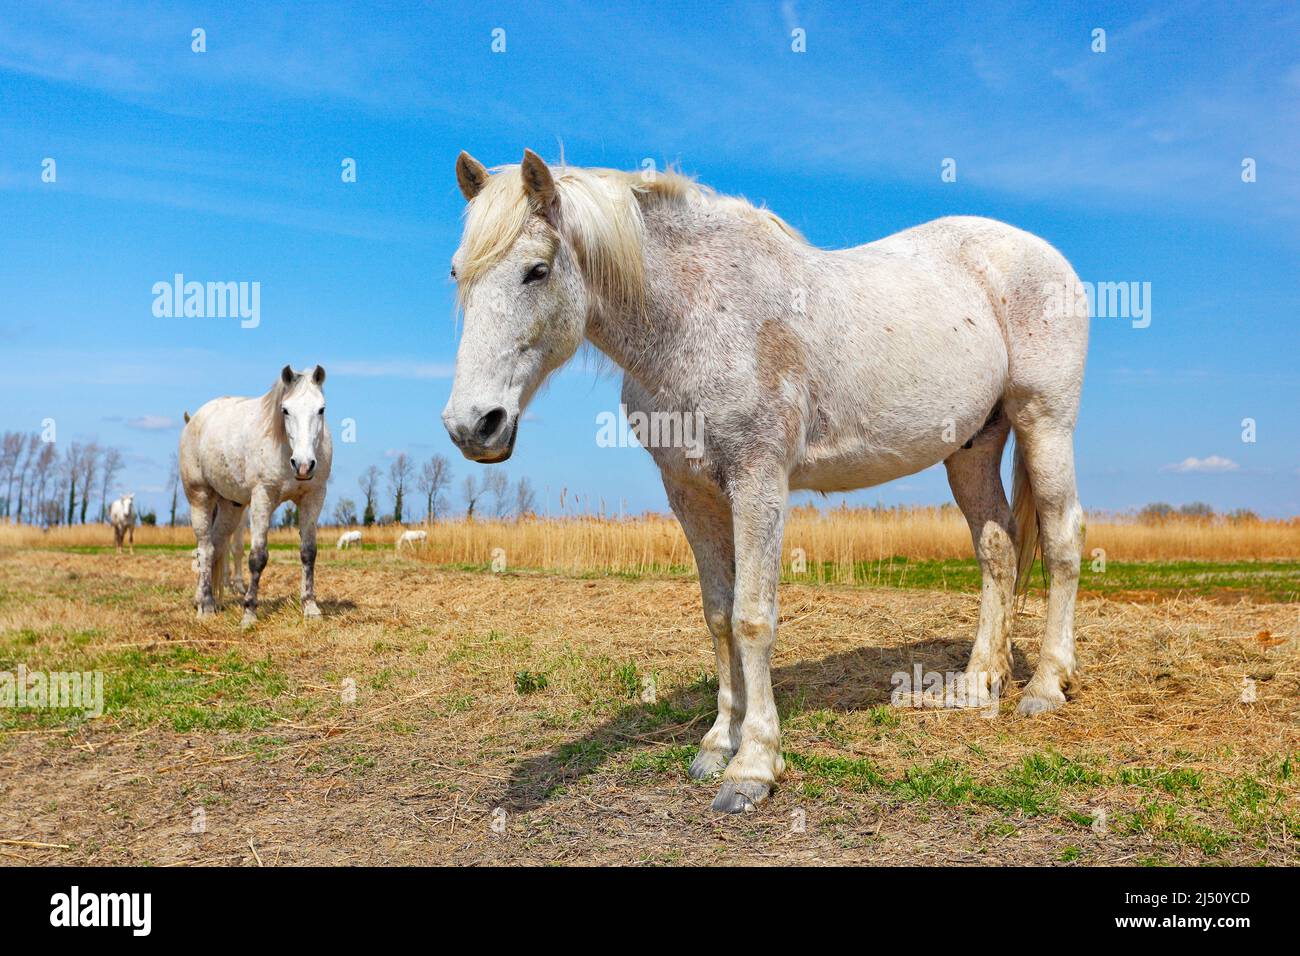 Bel cavallo bianco nutrire su fieno con tre cavalli sullo sfondo, cielo blu scuro con nuvole, Camargue, Francia. Viaggiare in Francia, vacanze in Europa. Grande Foto Stock